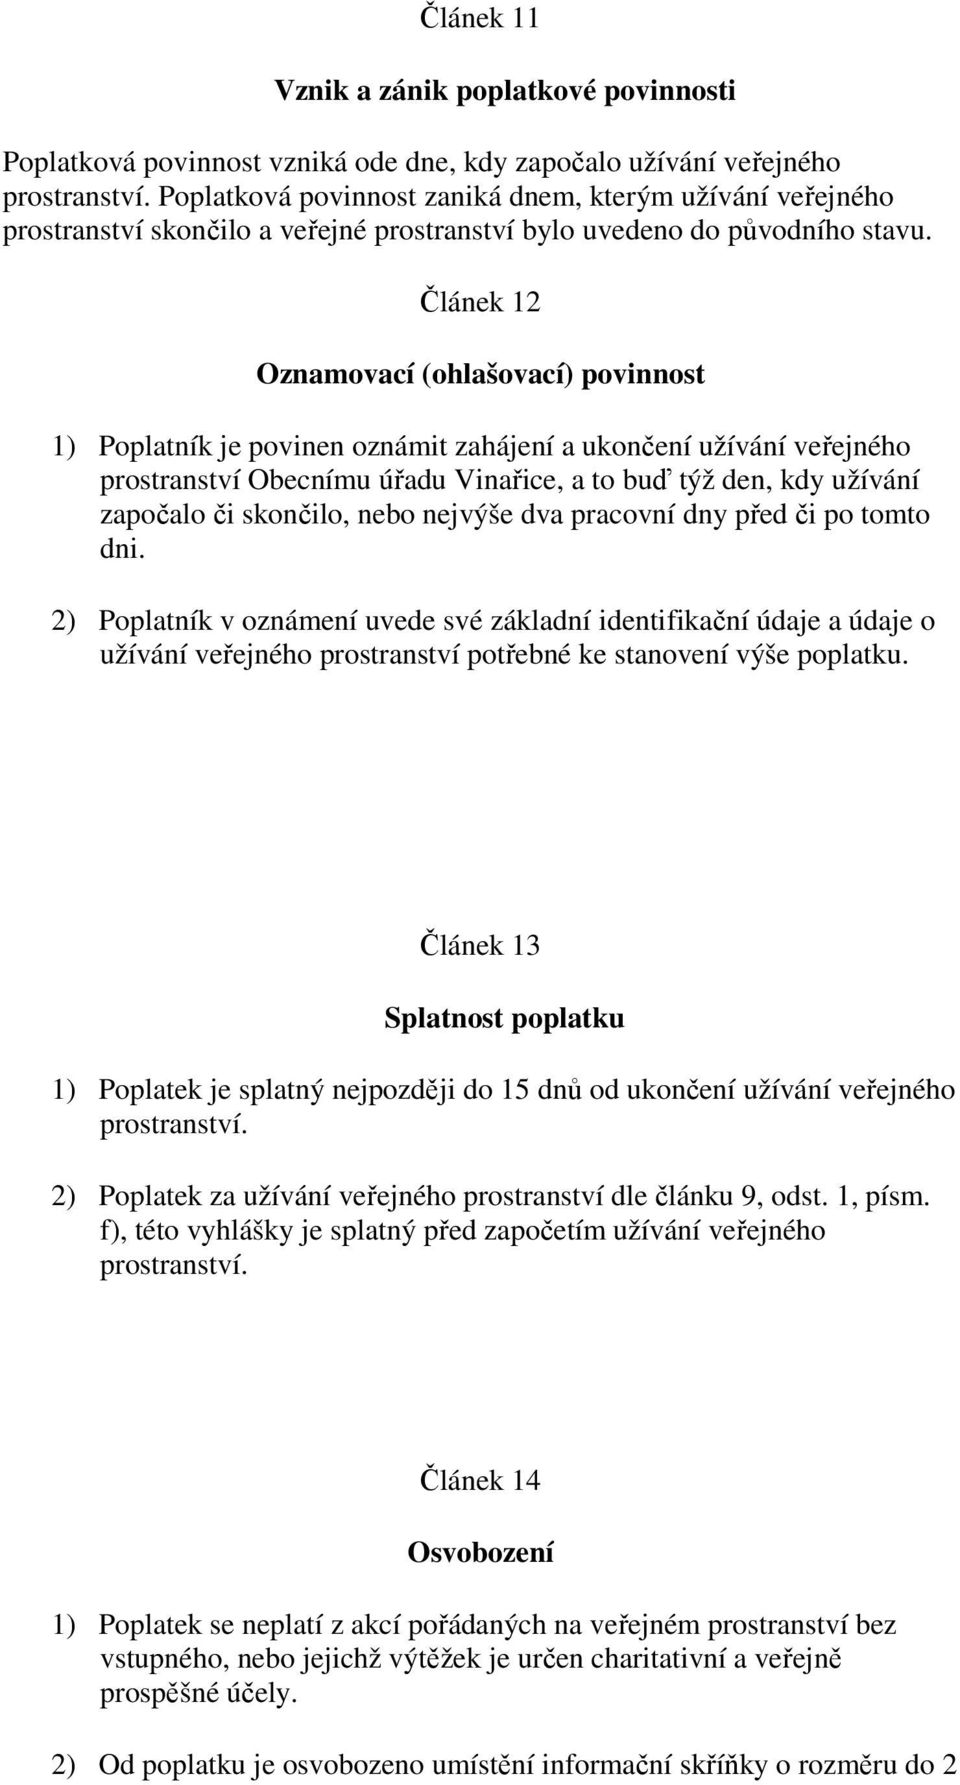 Článek 12 Oznamovací (ohlašovací) povinnost 1) Poplatník je povinen oznámit zahájení a ukončení užívání veřejného prostranství Obecnímu úřadu Vinařice, a to buď týž den, kdy užívání započalo či